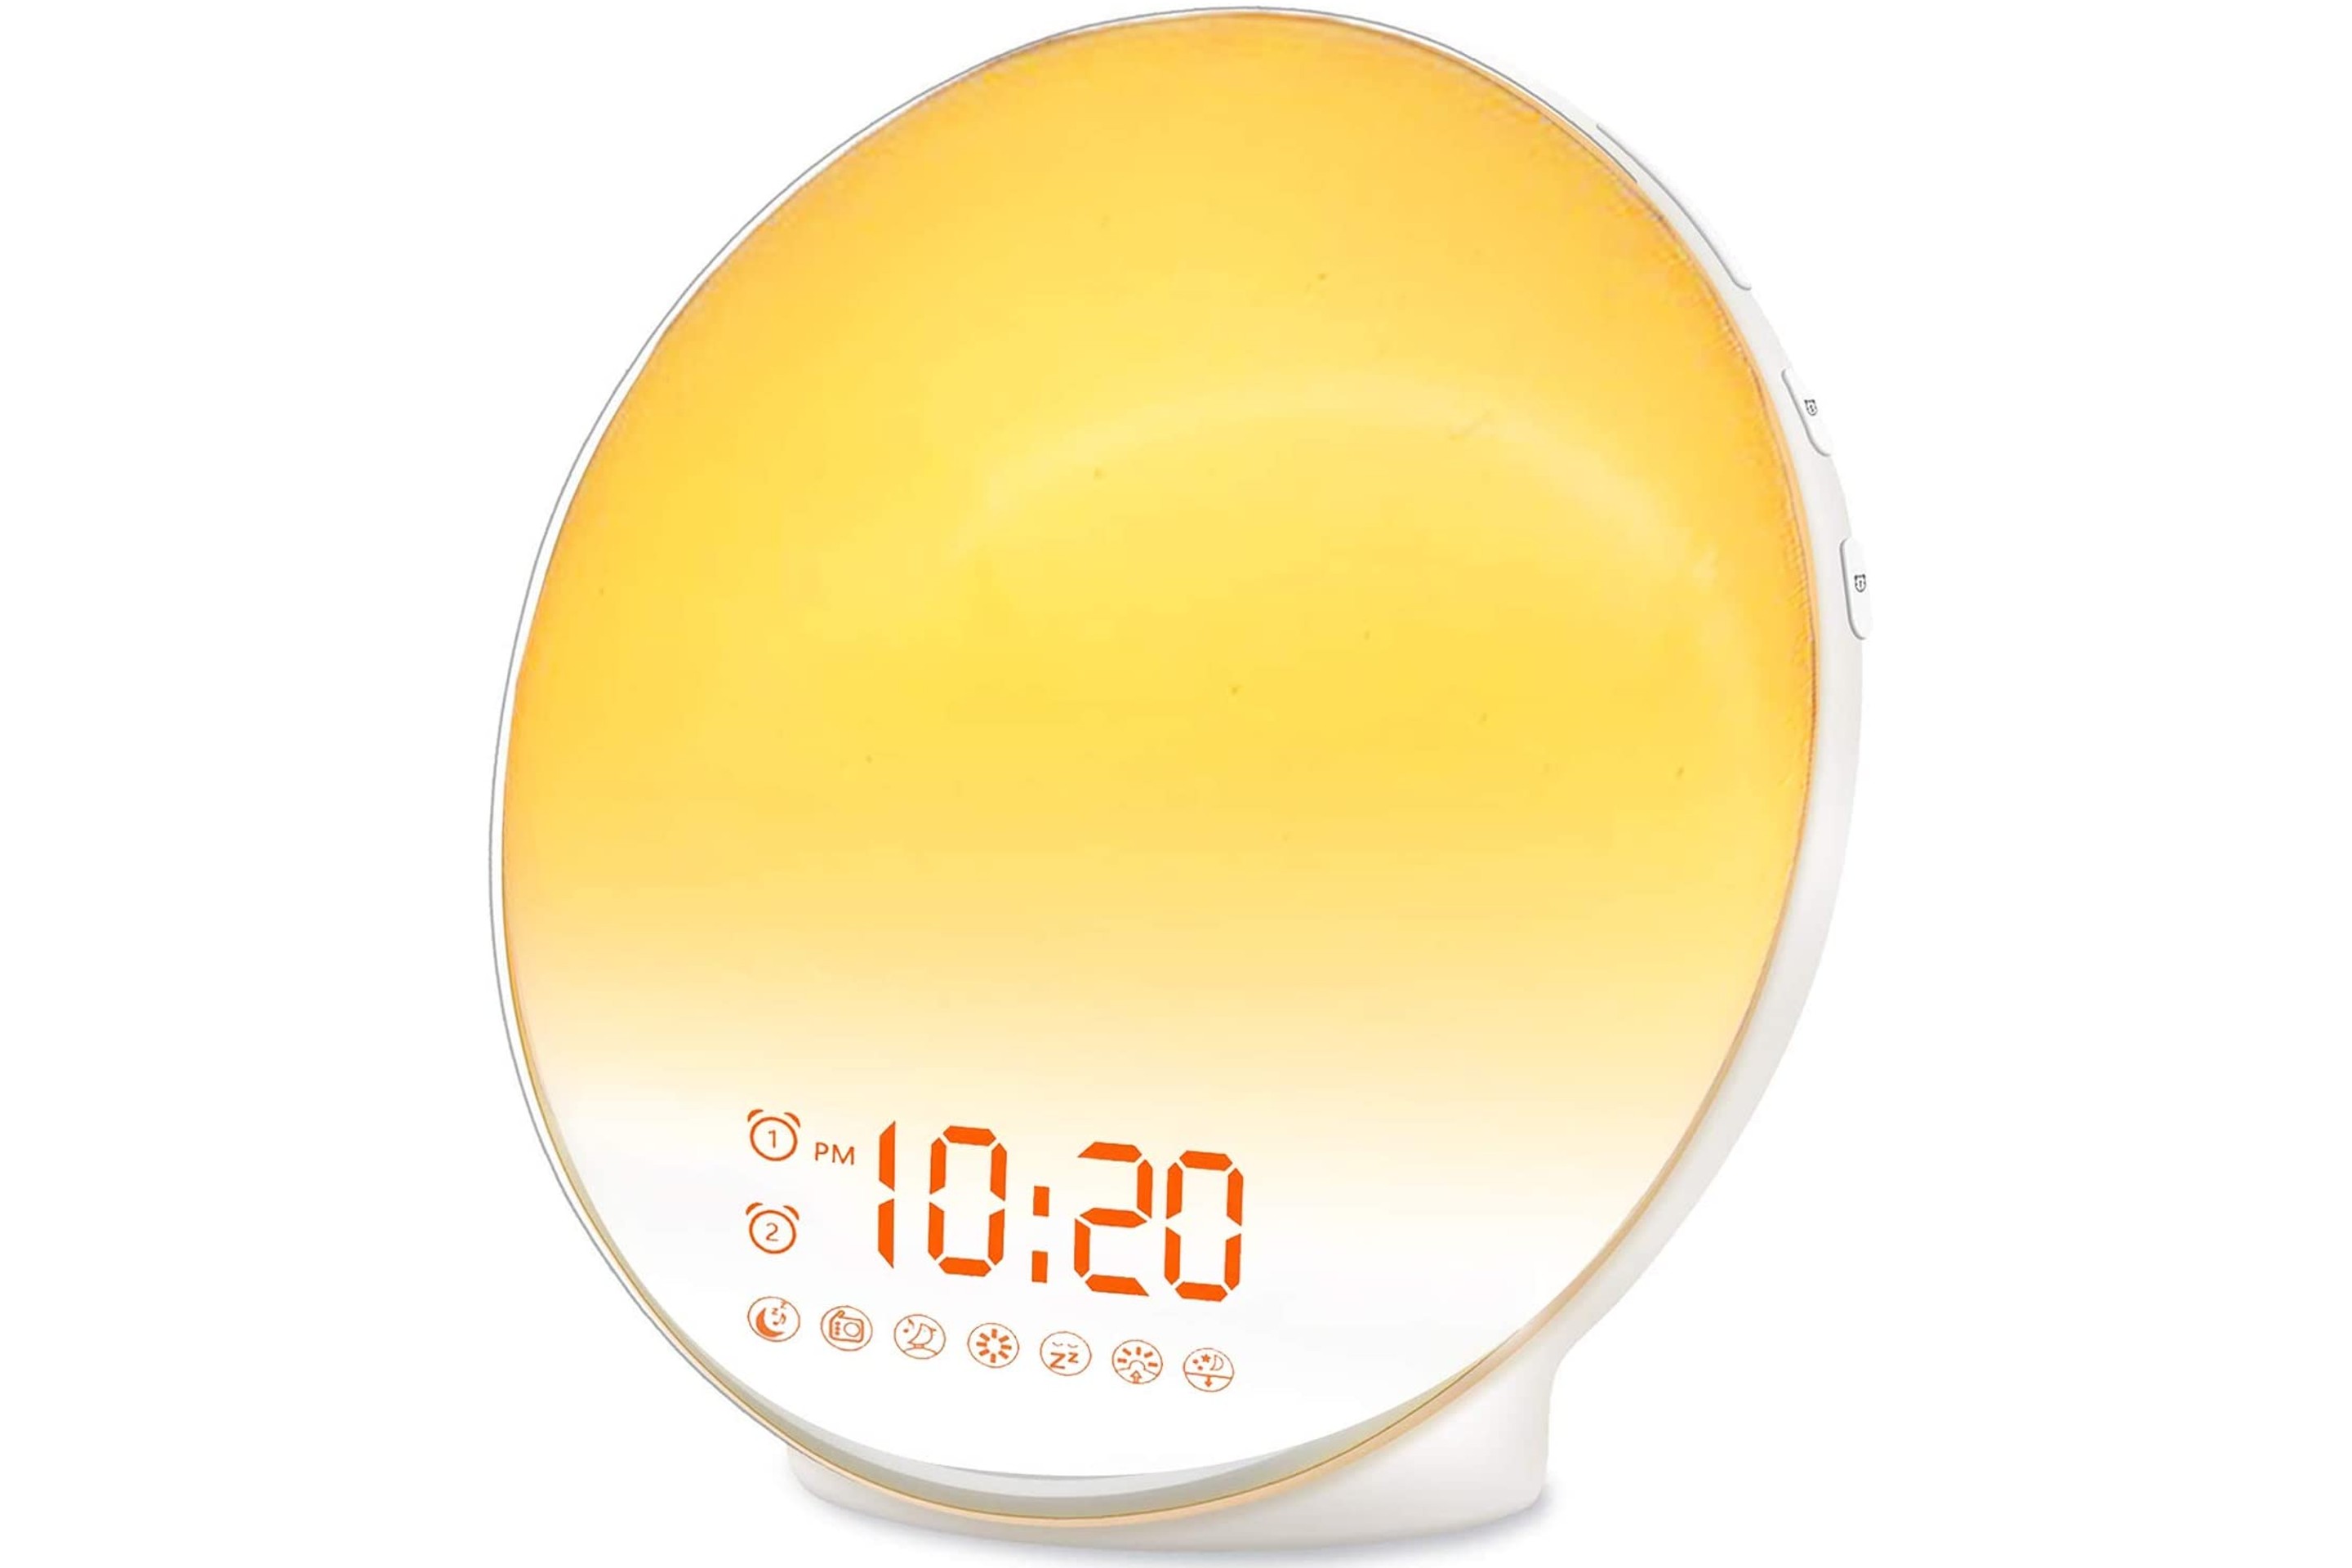 Dual Sunrise Alarm Clock